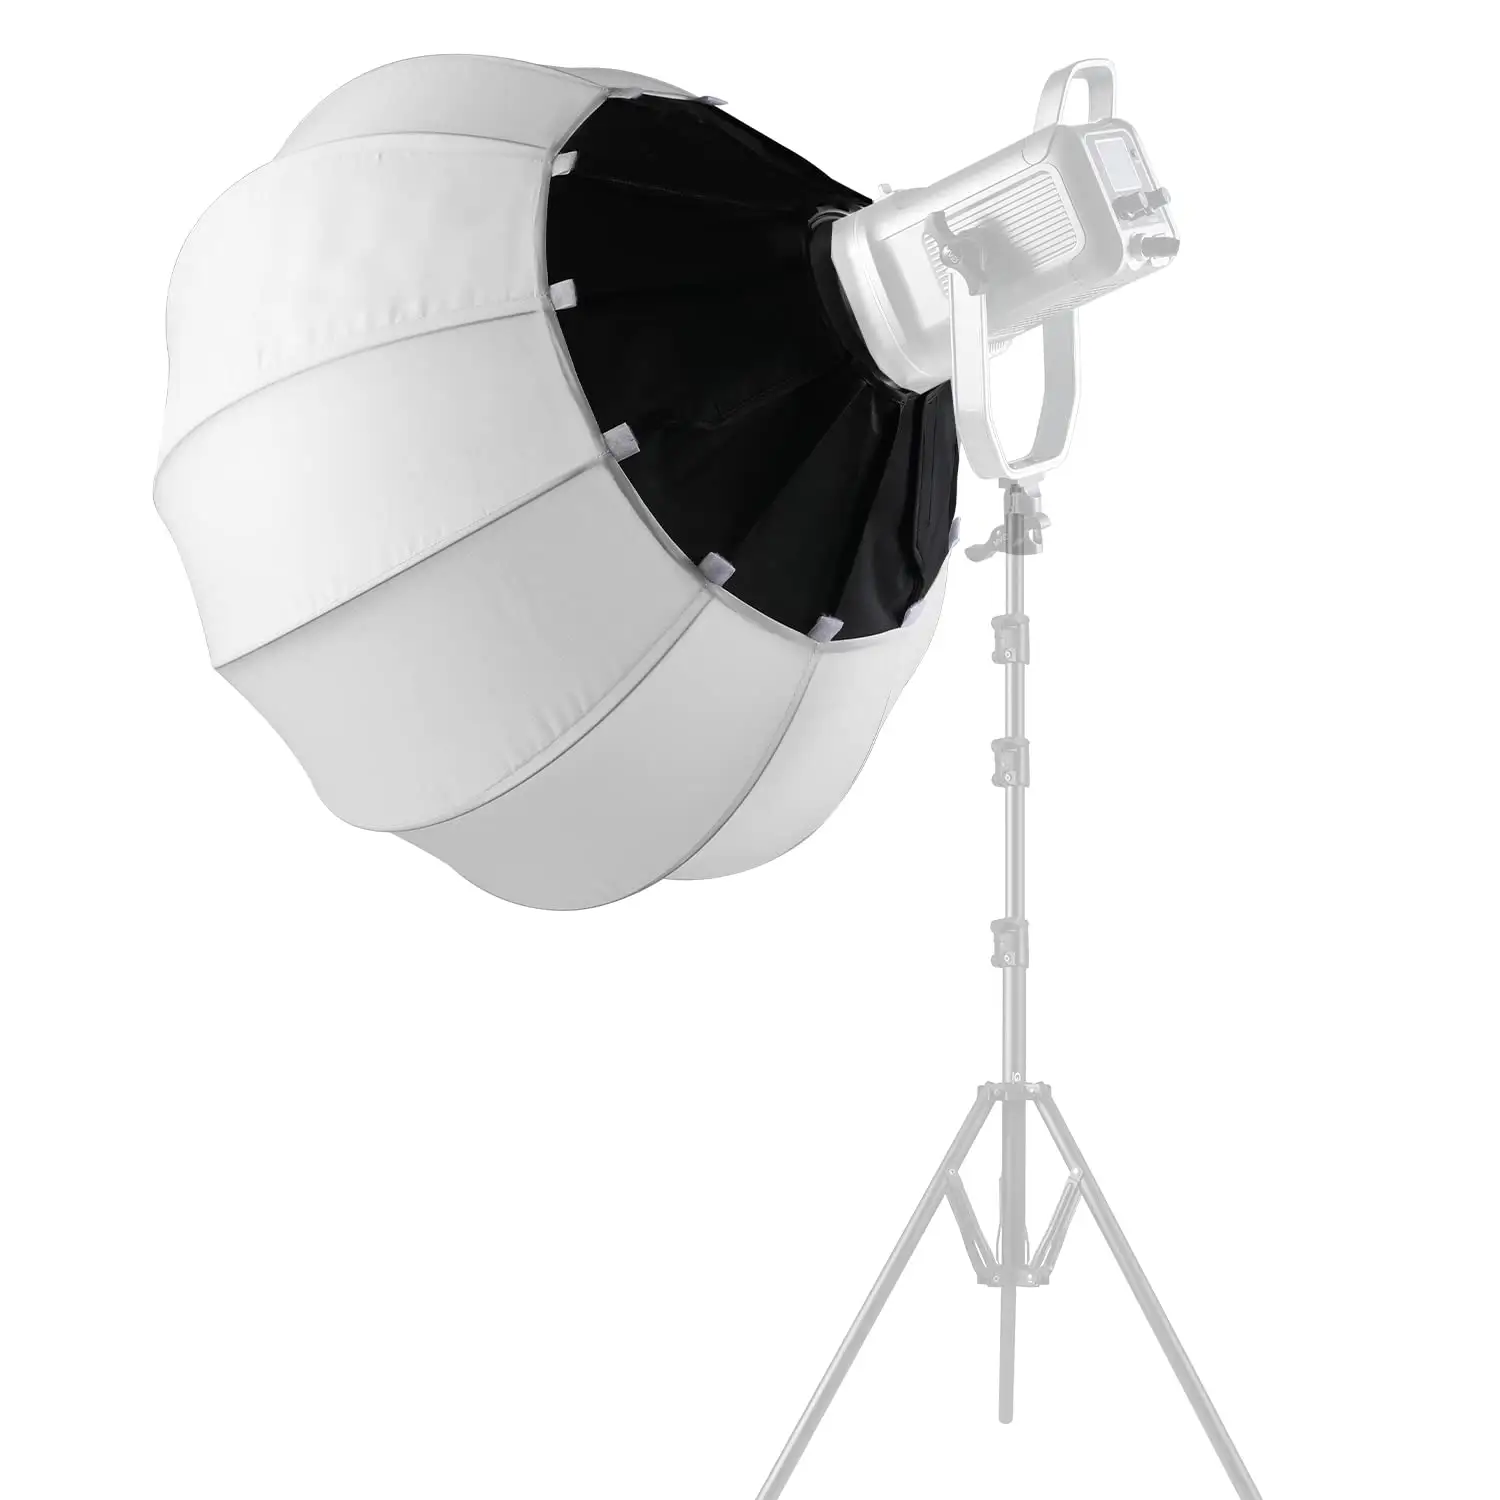 65cm Easy Setup Faltbare Laterne Softbox Speed Lite Flash Dauerlicht Soft Box für Portrait Photography Video Studio